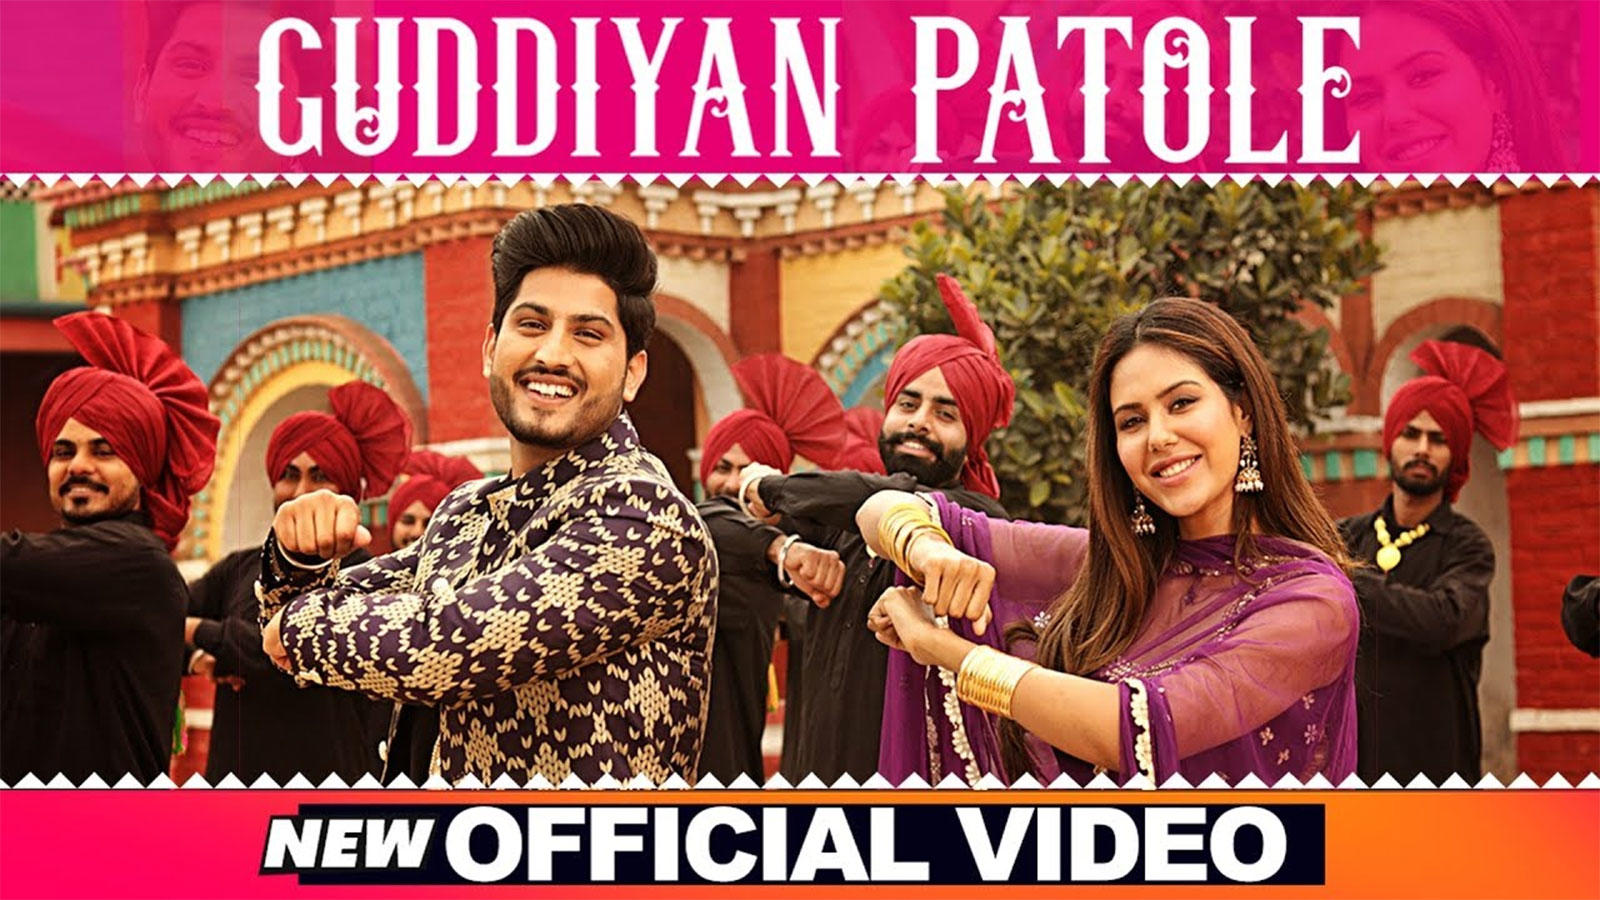 Guddiyan Patole Movie , HD Wallpaper & Backgrounds